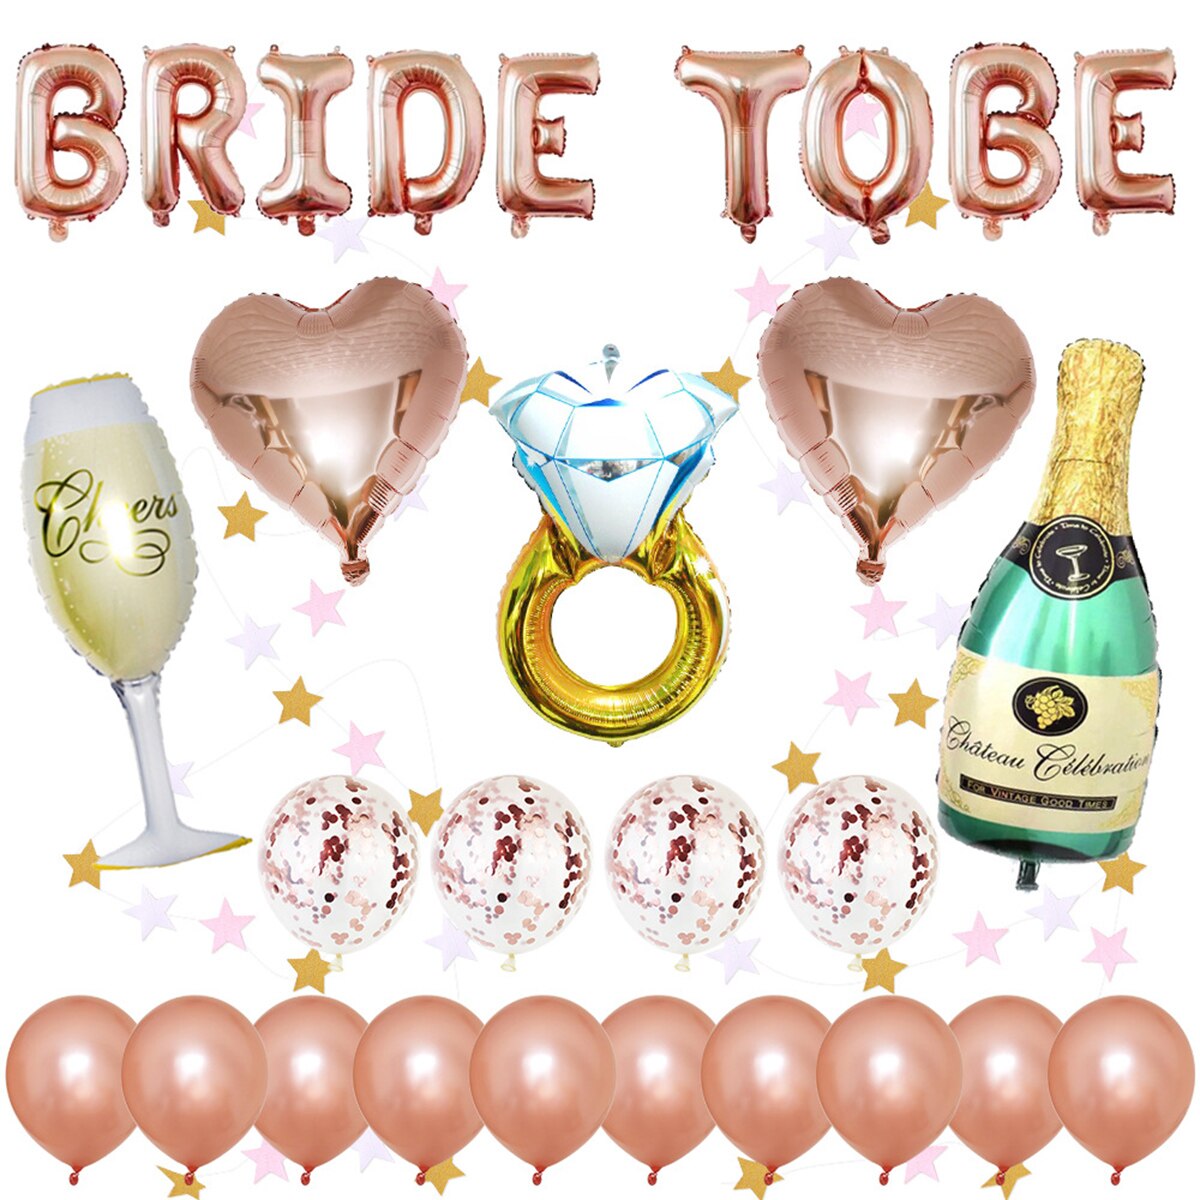 Vrijgezellenfeest Decoratie Kit Bridal Shower Levert Bruid Om Folie Ballonnen Sequin Latex Ballonnen